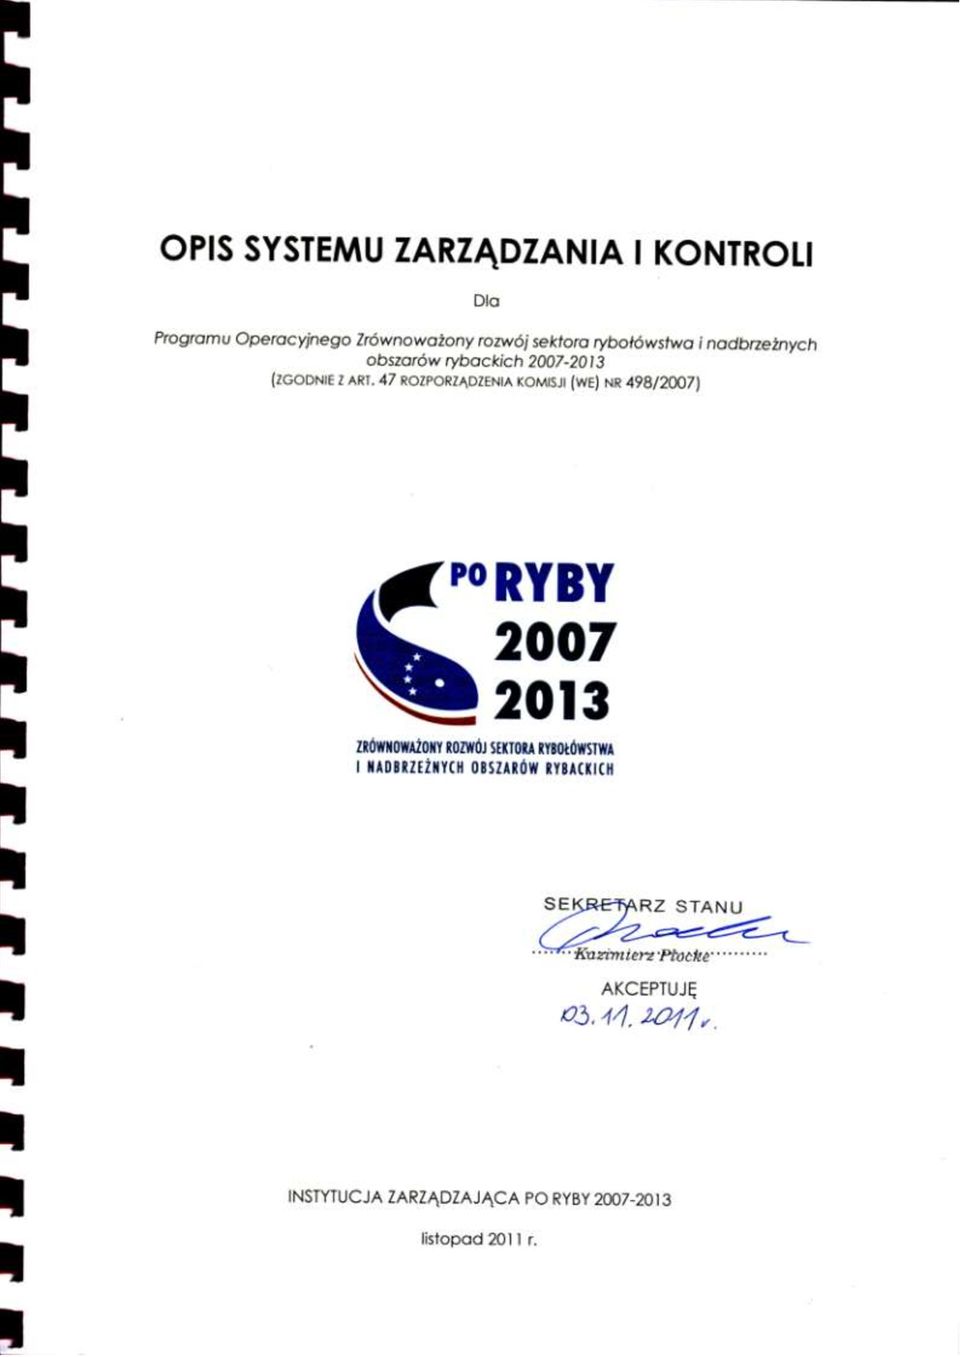 rybackich 2007-2013 (ZGODNIE Z ART.